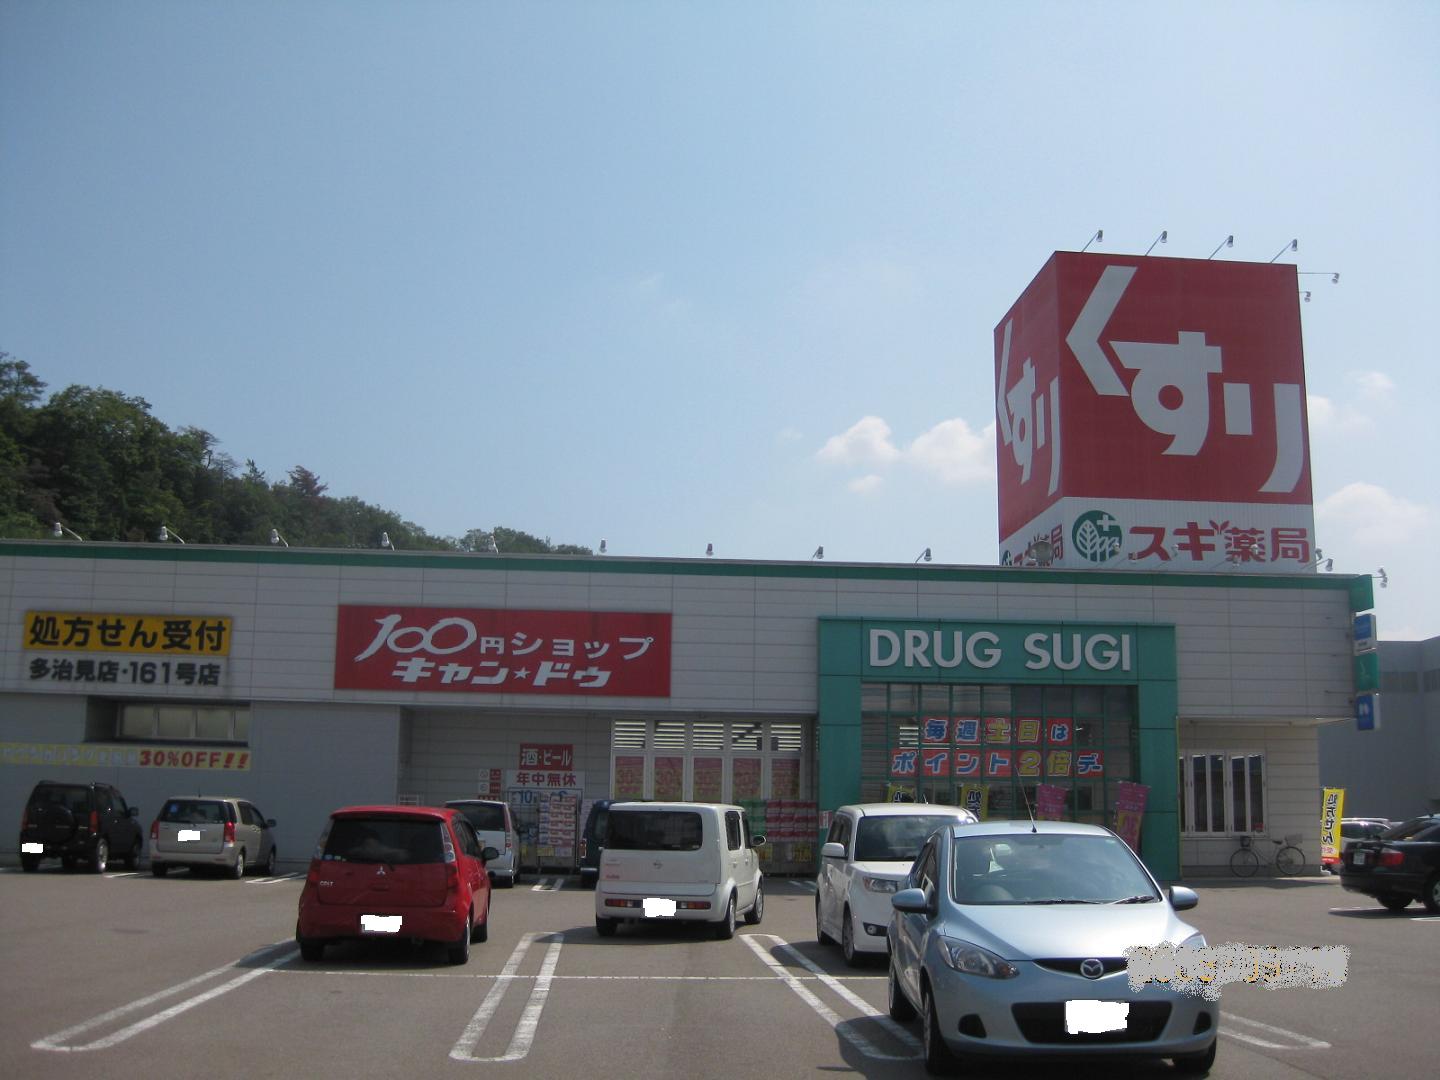 Dorakkusutoa. Cedar pharmacy Tajimi shop 468m until (drugstore)